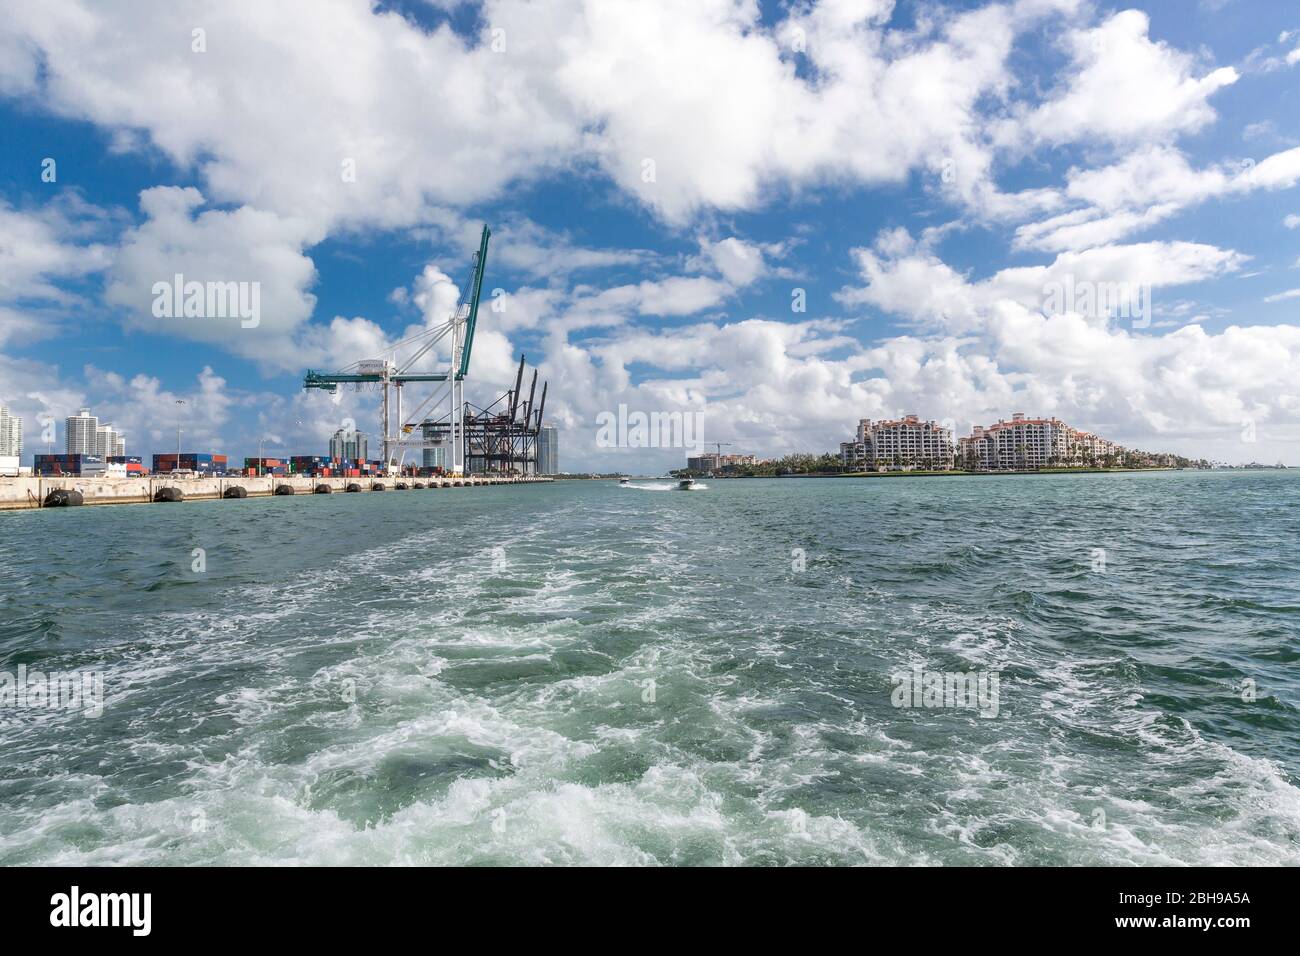 Port Miami, Frachthafen mit Kränen, rechts Provident Luxury Suites Fisher Resort, Hochhäuser mit Luxuswohnungen, Fisher Island, Miami, Miami-Dade Coun Stock Photo